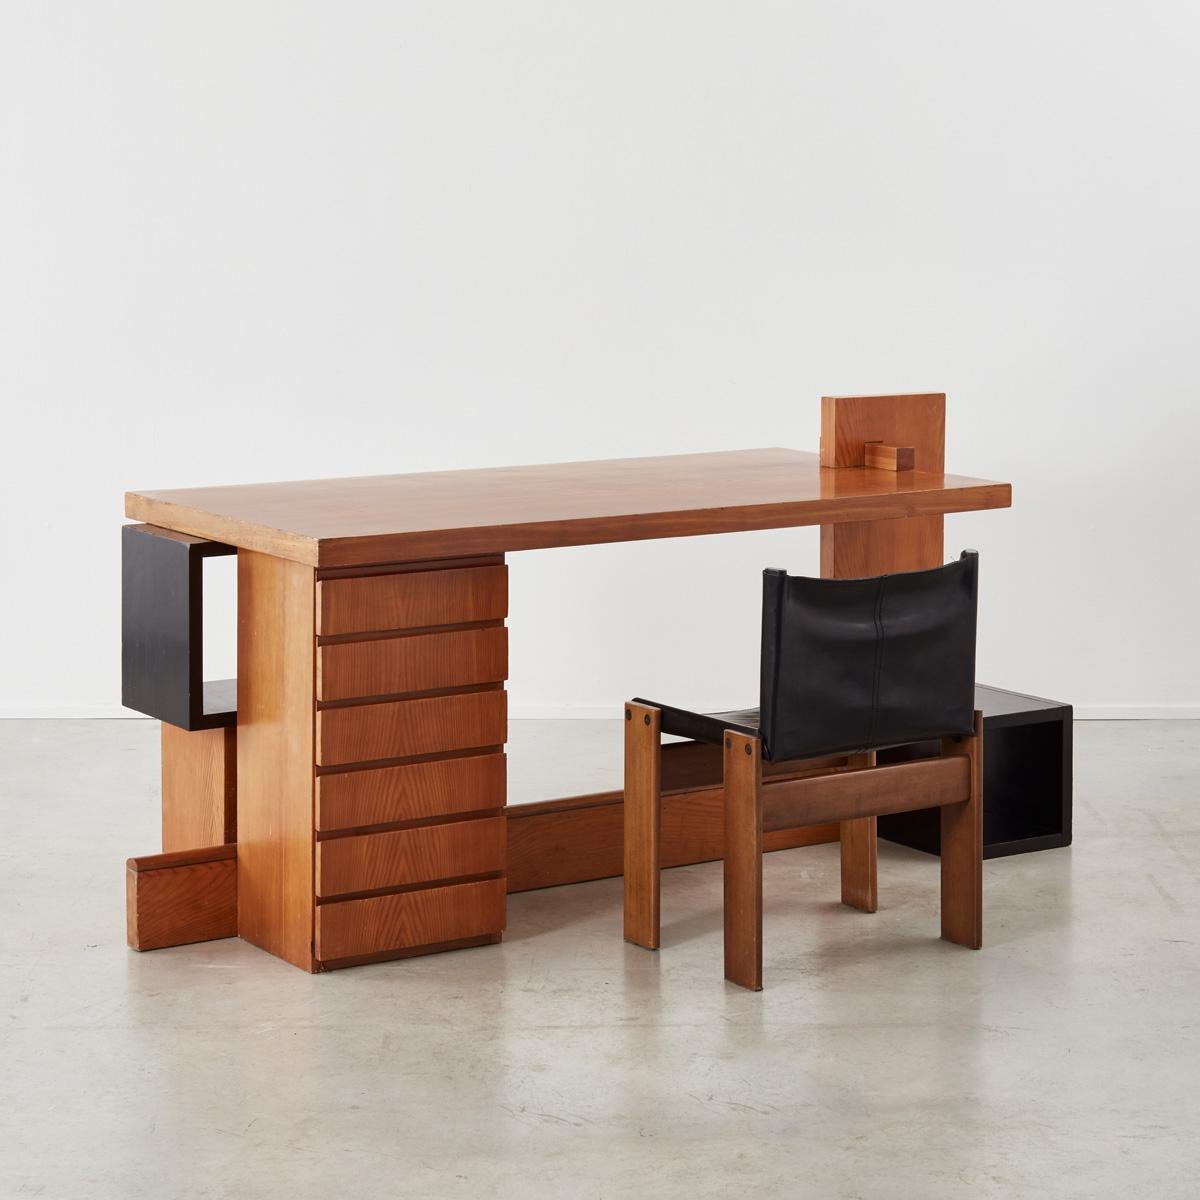 Italian Unique Constructivist style desk by Daniele Baroni, Italy, c1960